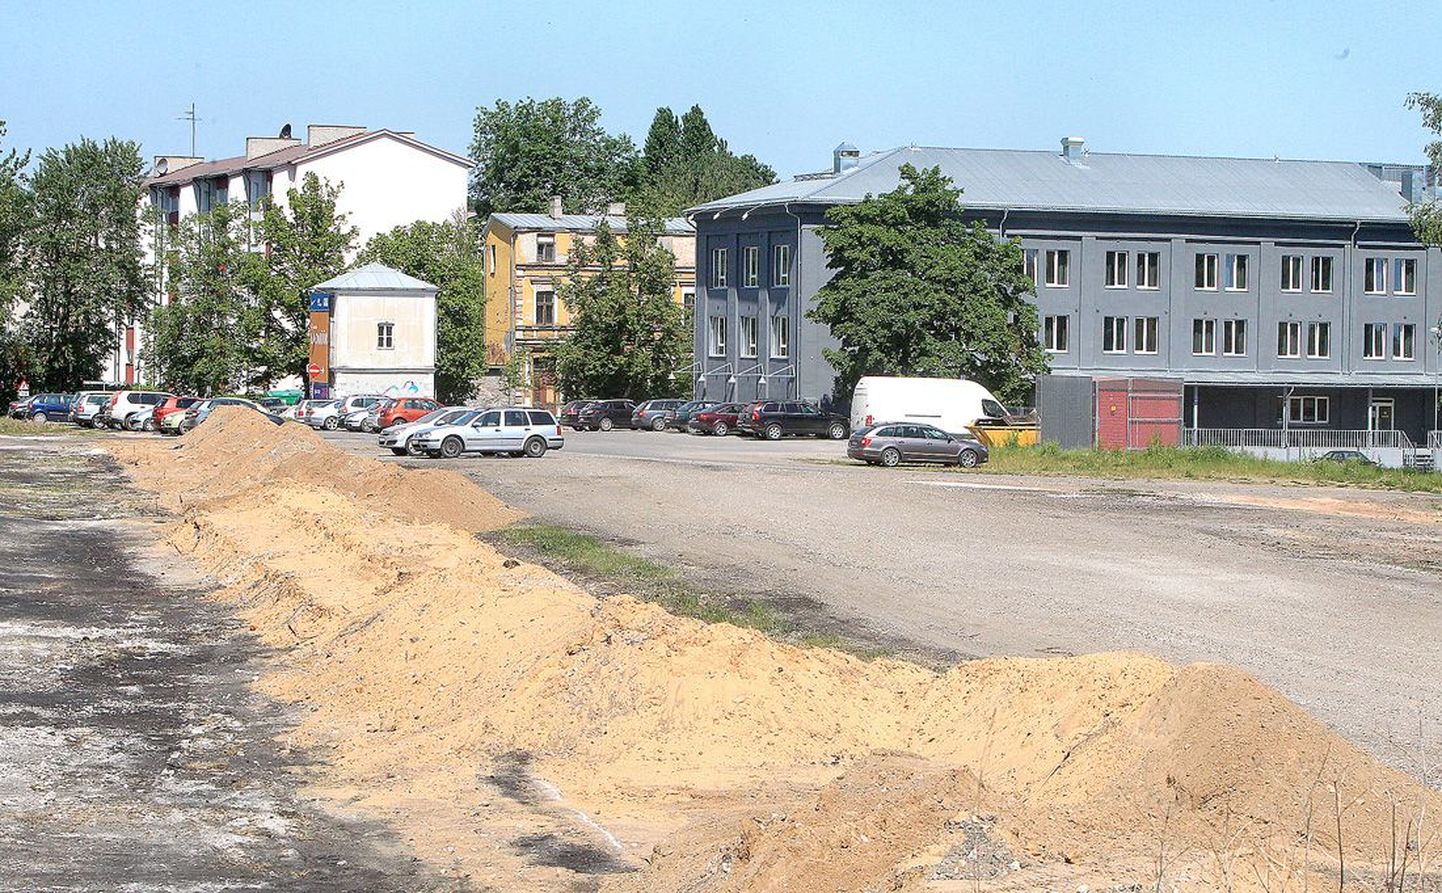 Riia tänava 
ääres endise Kauburi ja raudtee vahel algab õige pea suure parkla ehitus, seal saaks tasuta pikemalt 
parkida.